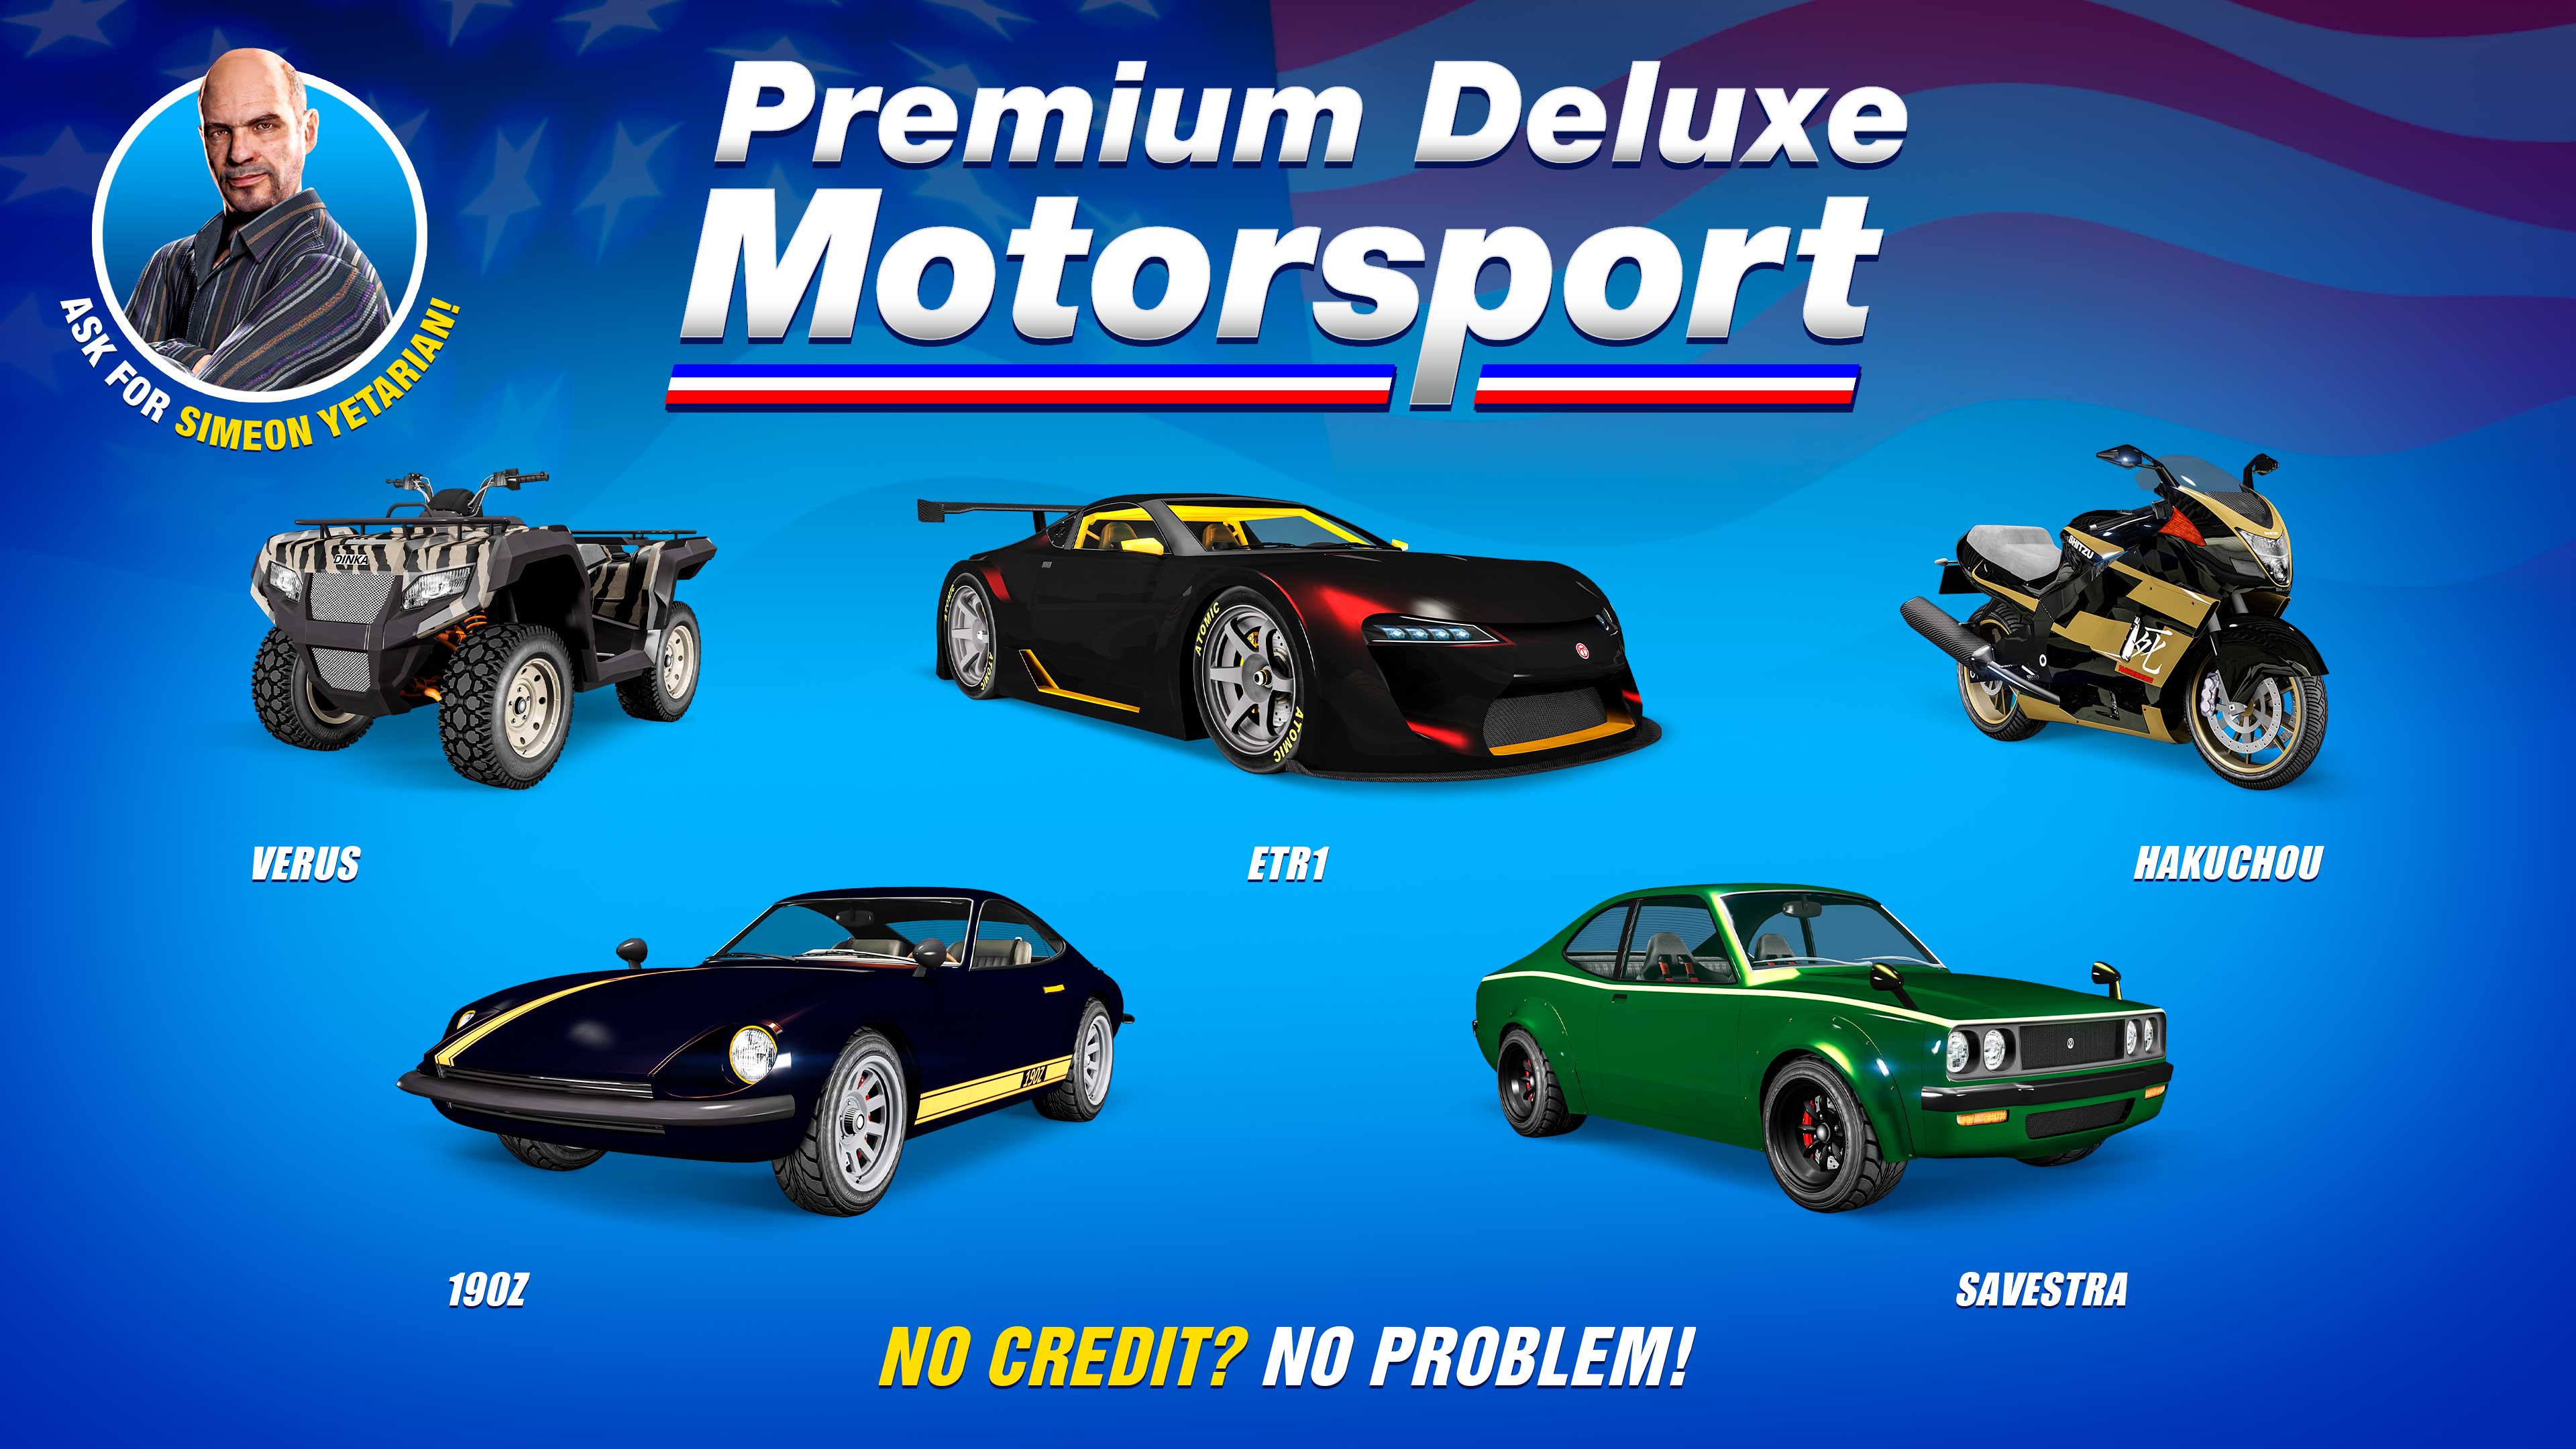 Pôster de Premium Deluxe Motorsport com cinco veículos: Emperor ETR1, Annis Savestra, Karin 190z, Shitzu Hakuchou, e Dinka Verus.